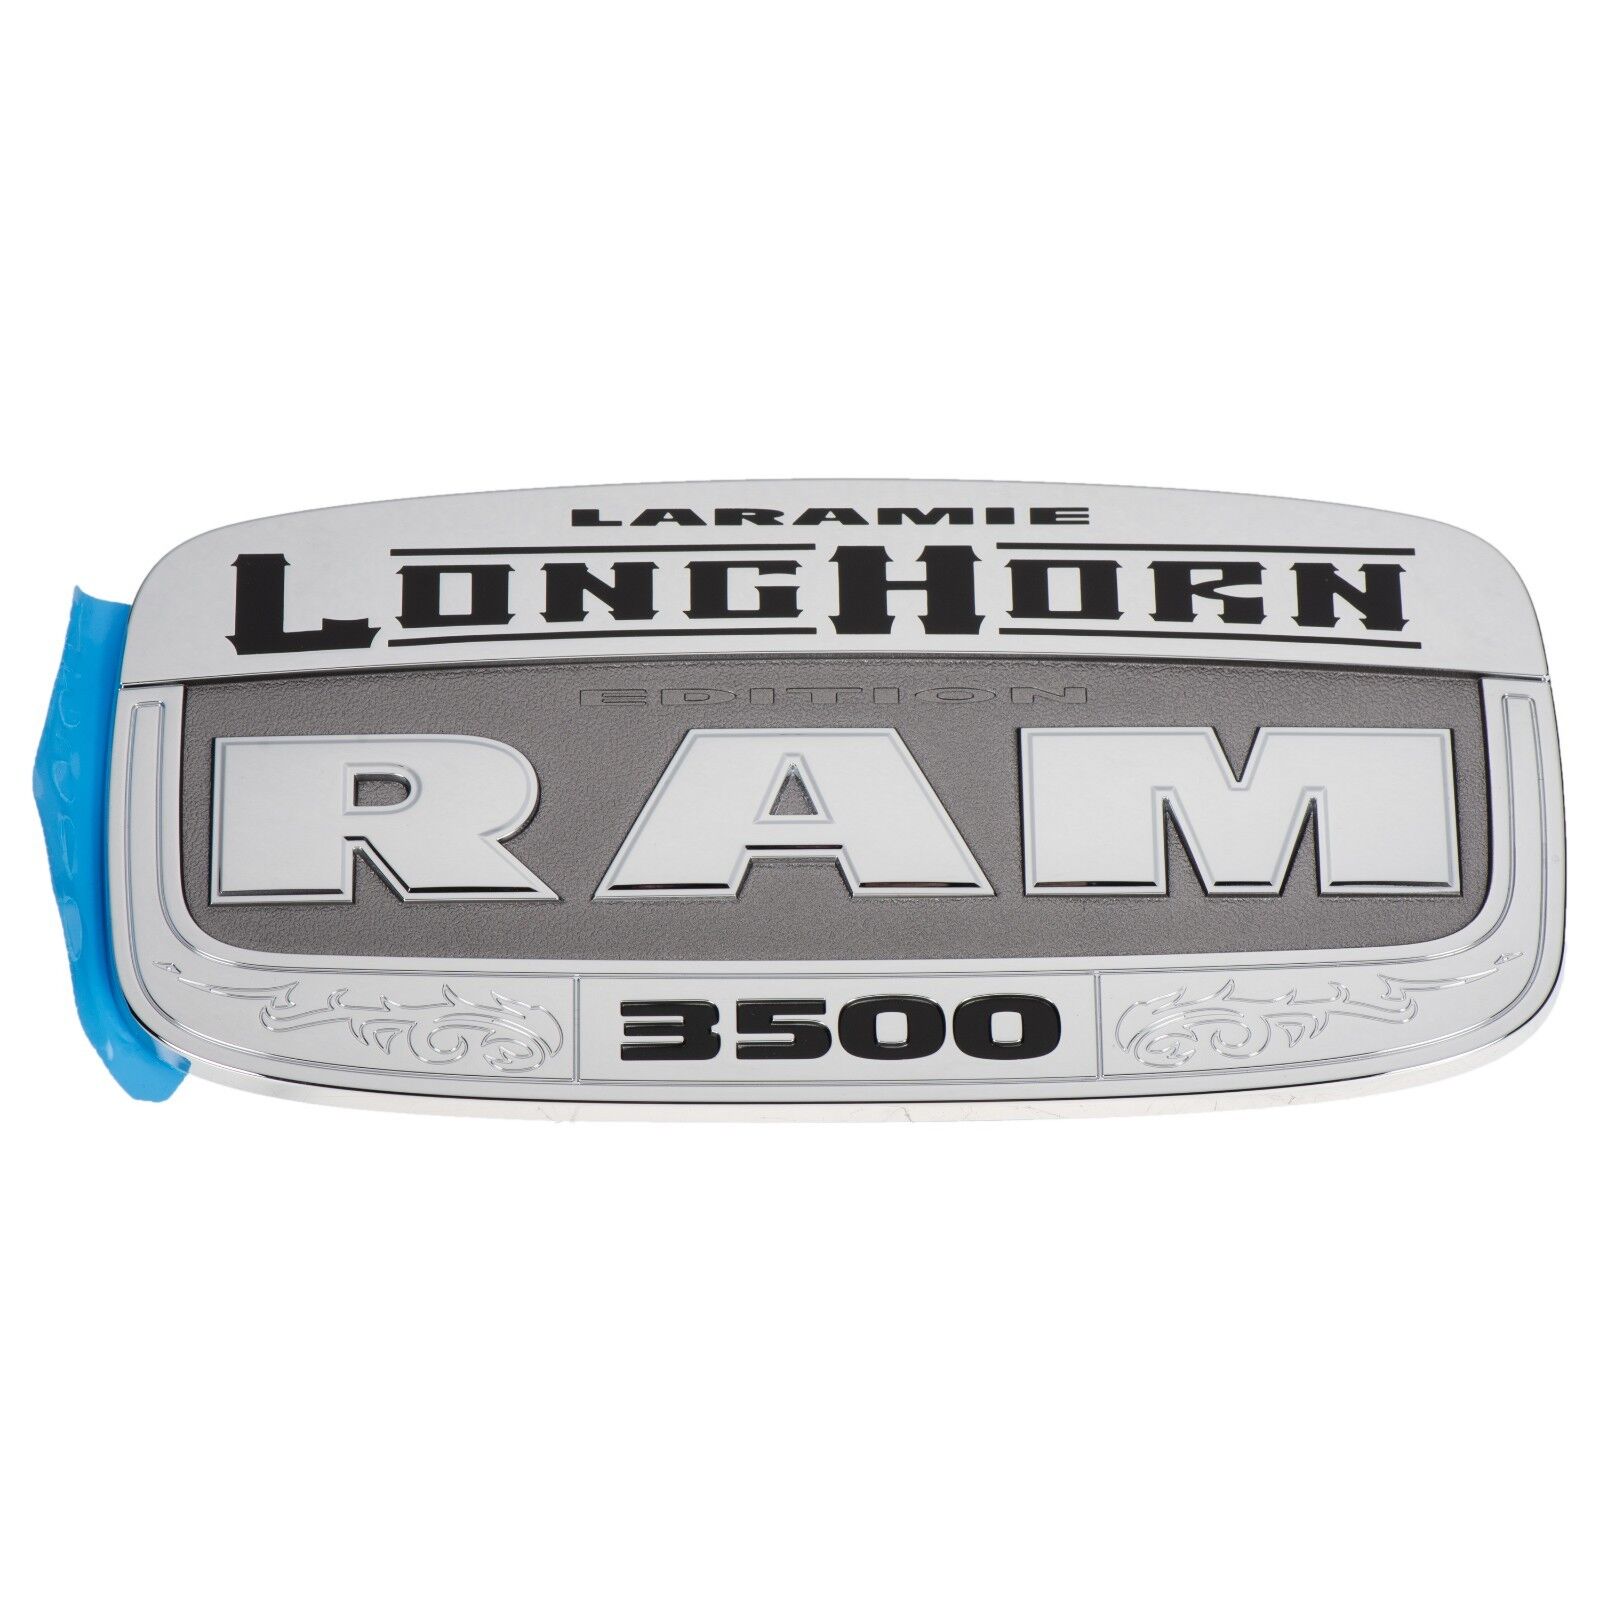 11-18 Dodge Ram 3500 Chrome Laramie LongHorn Edition Emblem Nameplate MOPAR NEW